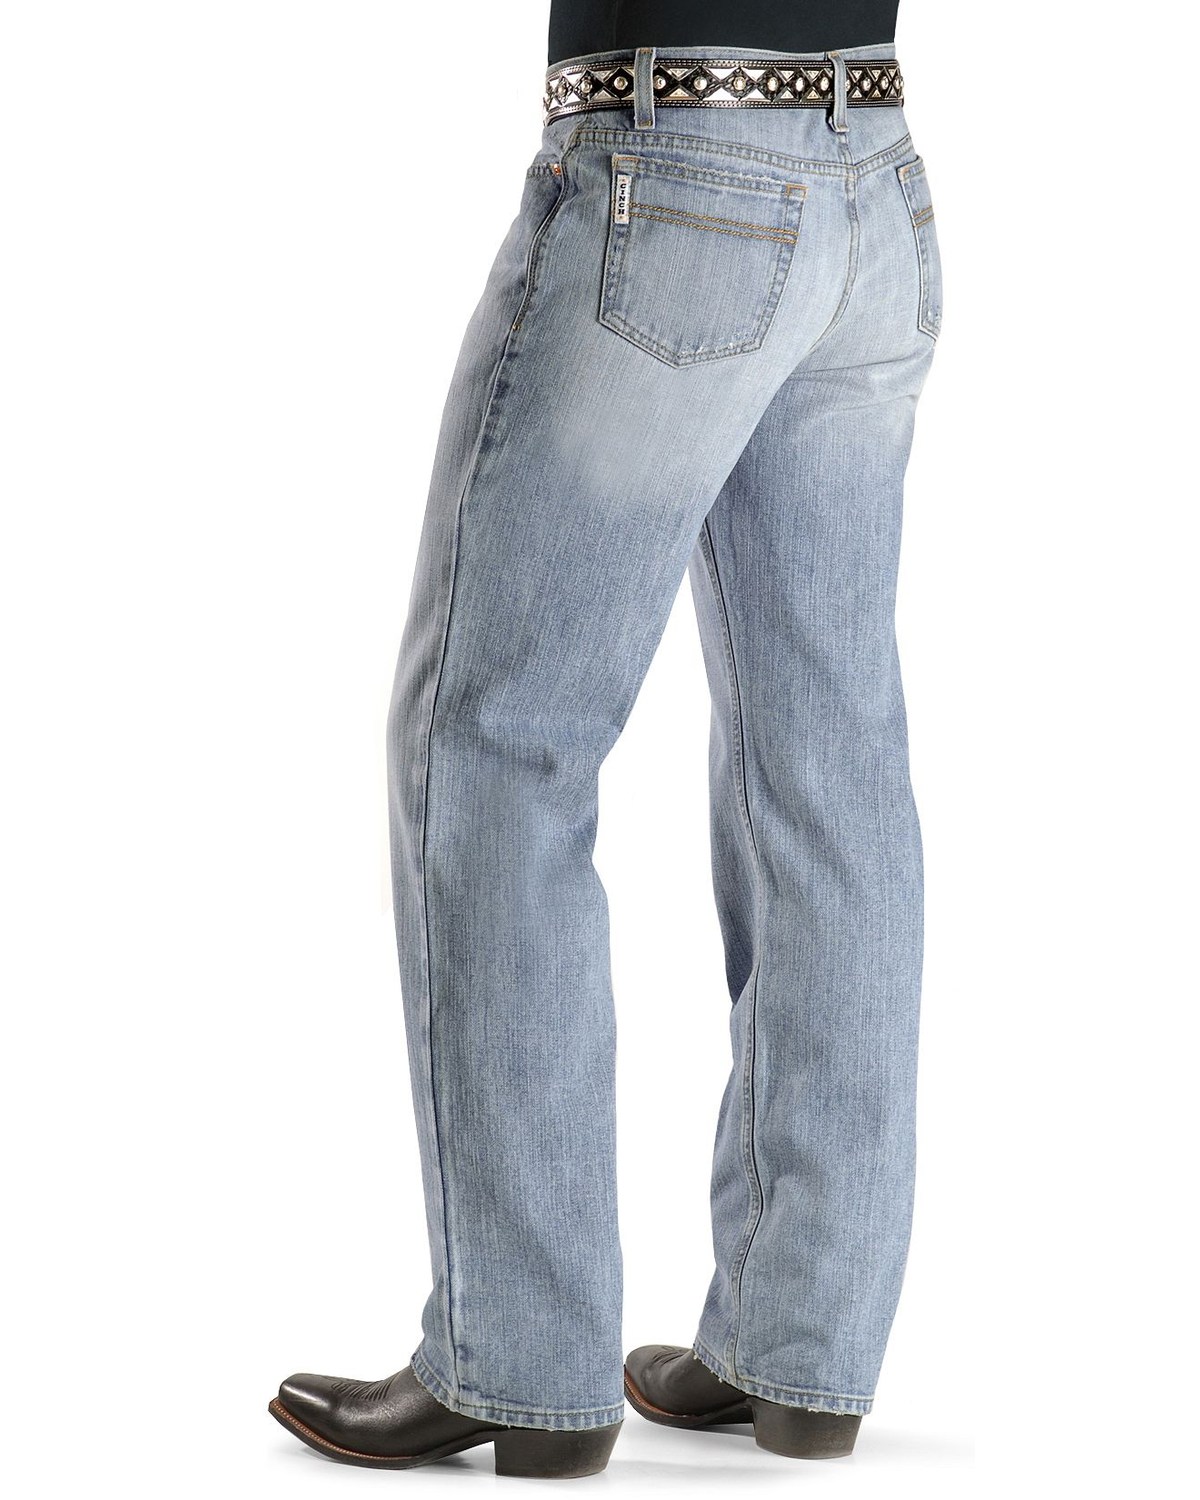 cinch jeans for men